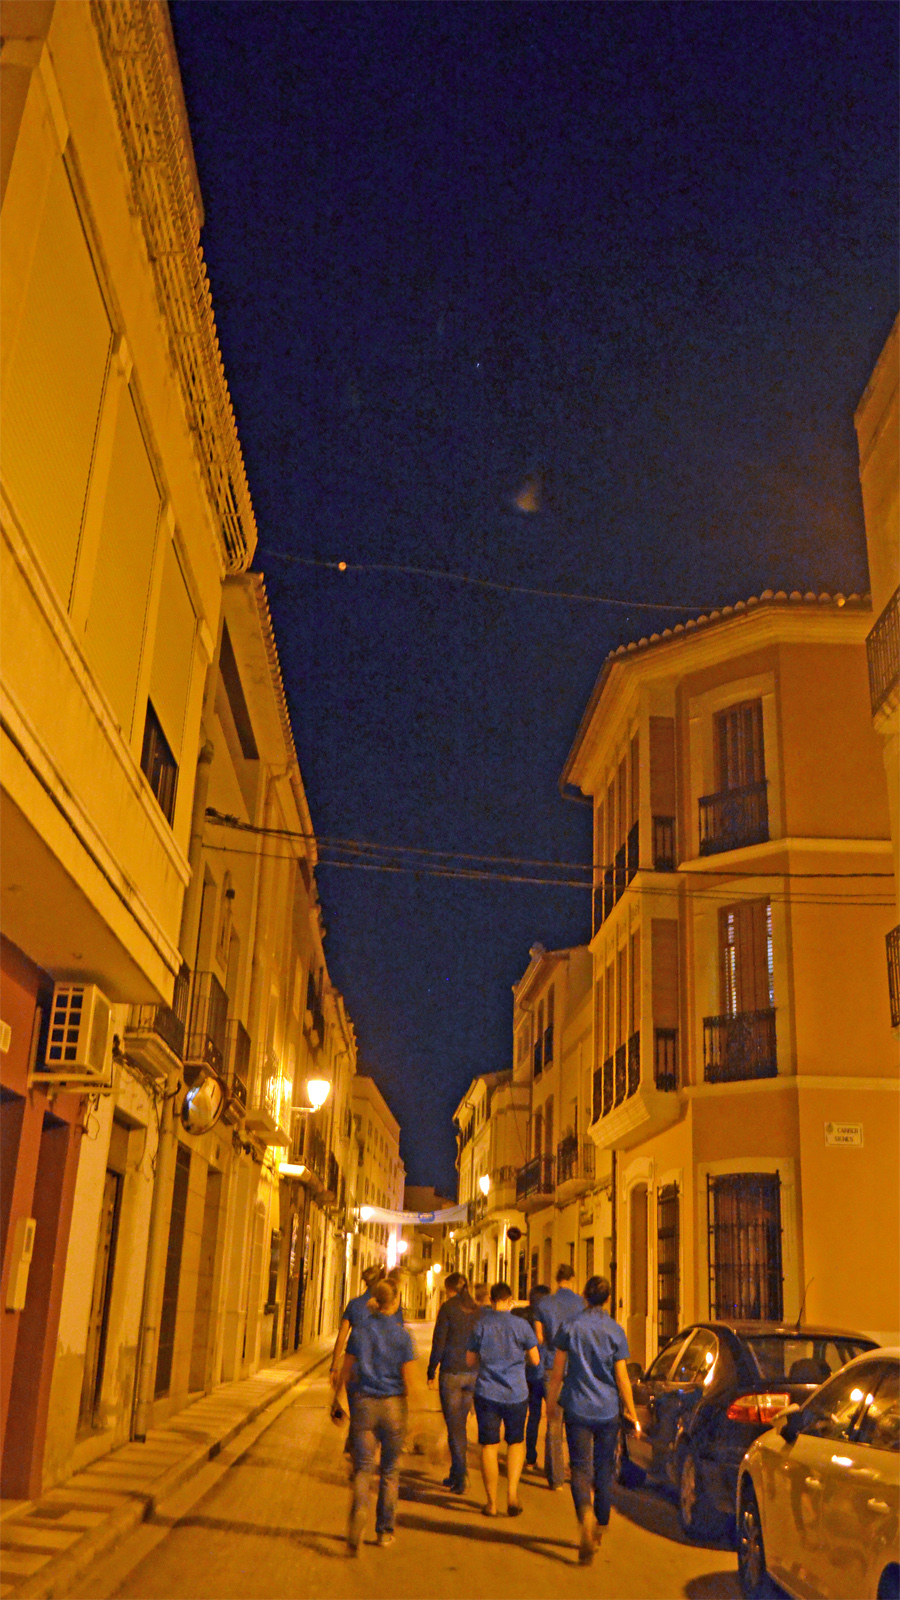 Walking down Gata street at night